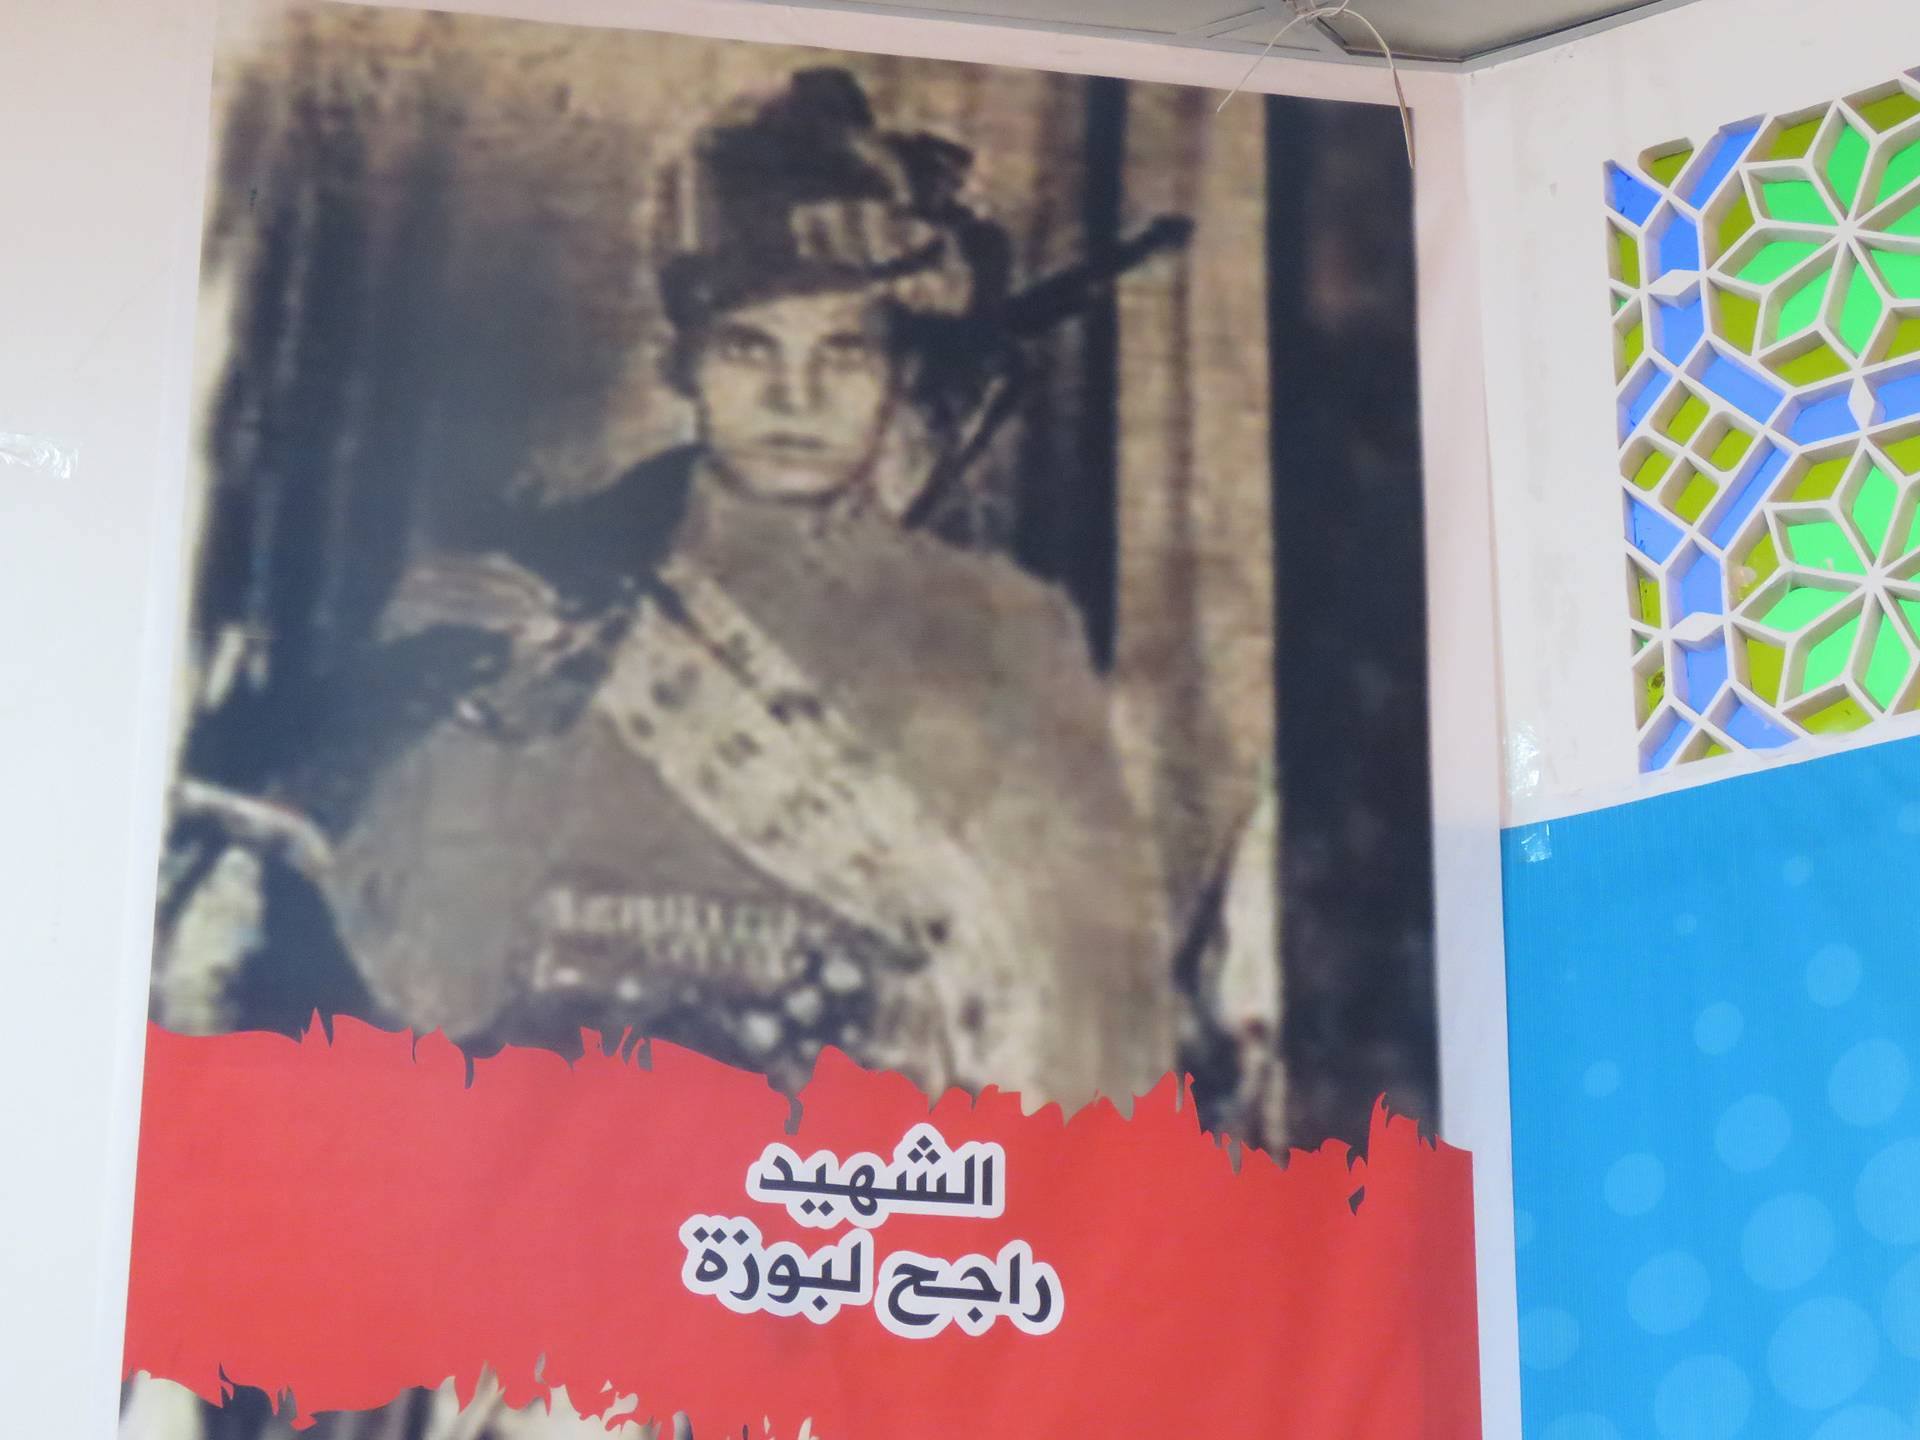 شاهد صورا لاحتفال محافظة بمأرب بذكرى ثورة اكتوبر الـ54